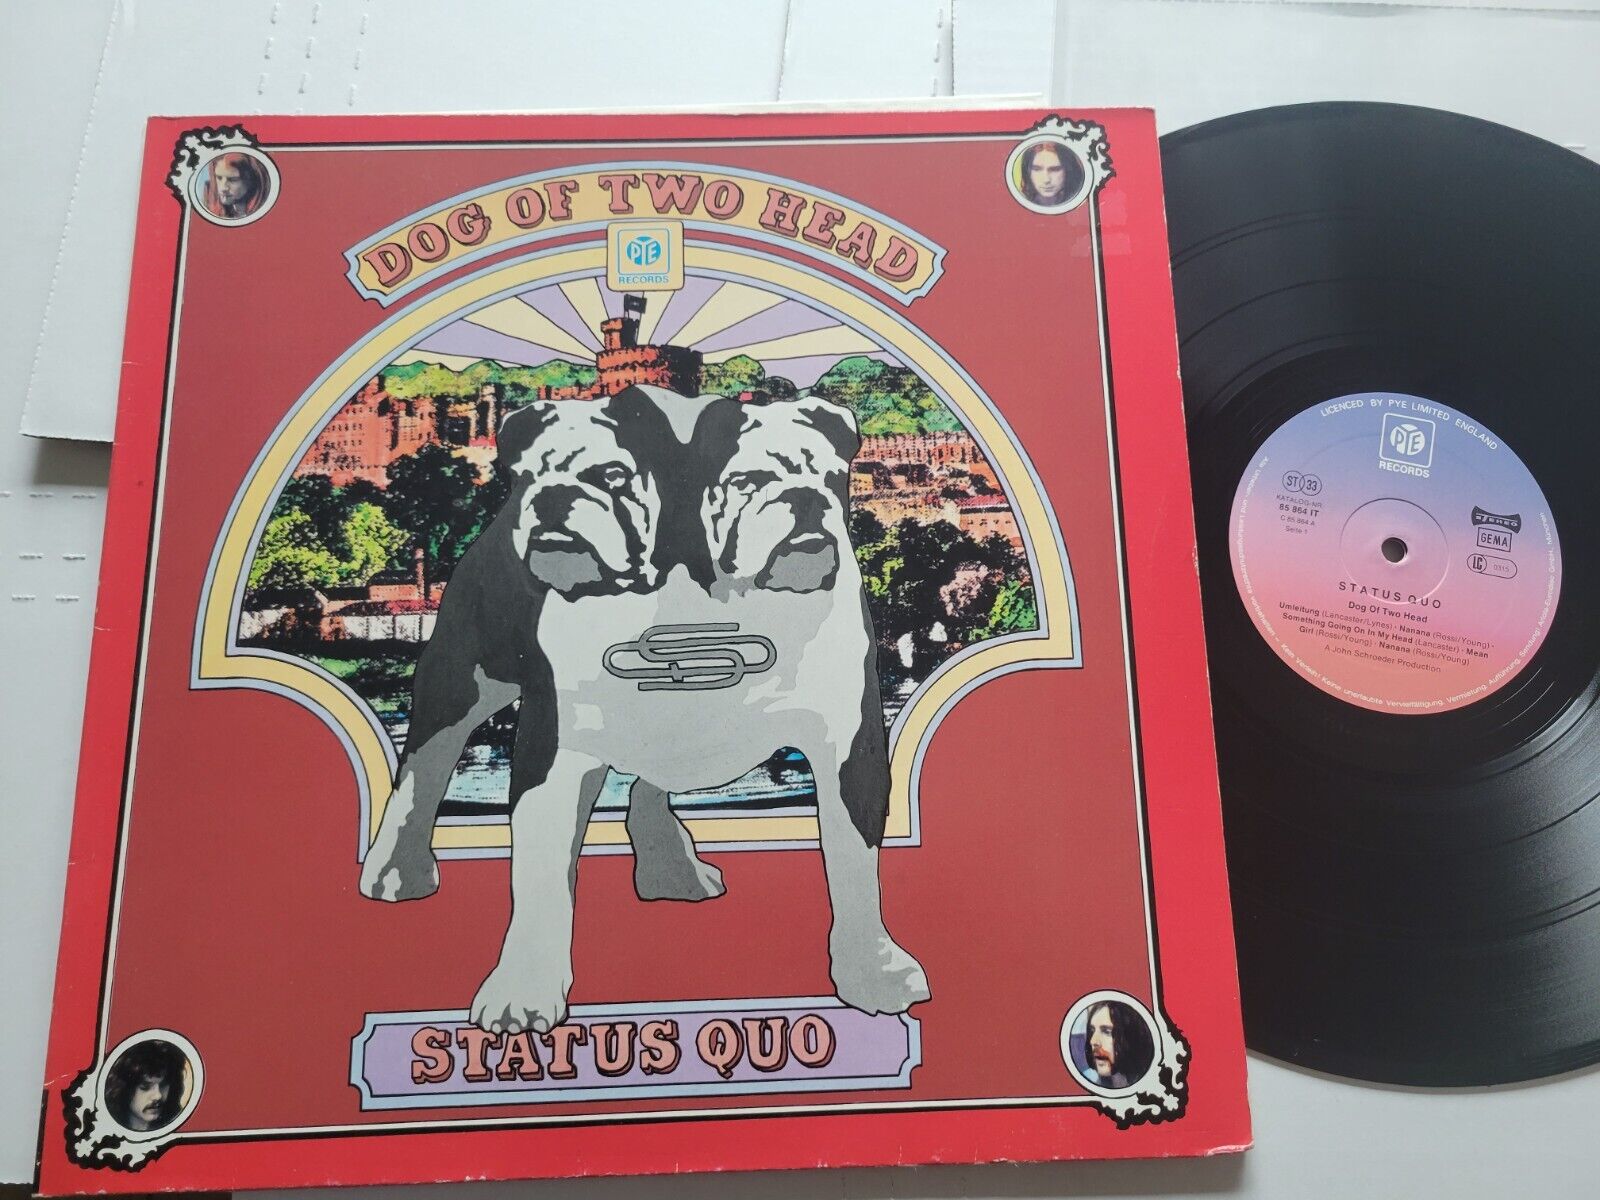 STATUS QUO - Dog of Two Heads 1971 HARD ROCK German Pye GATEFOLD Lp VG+